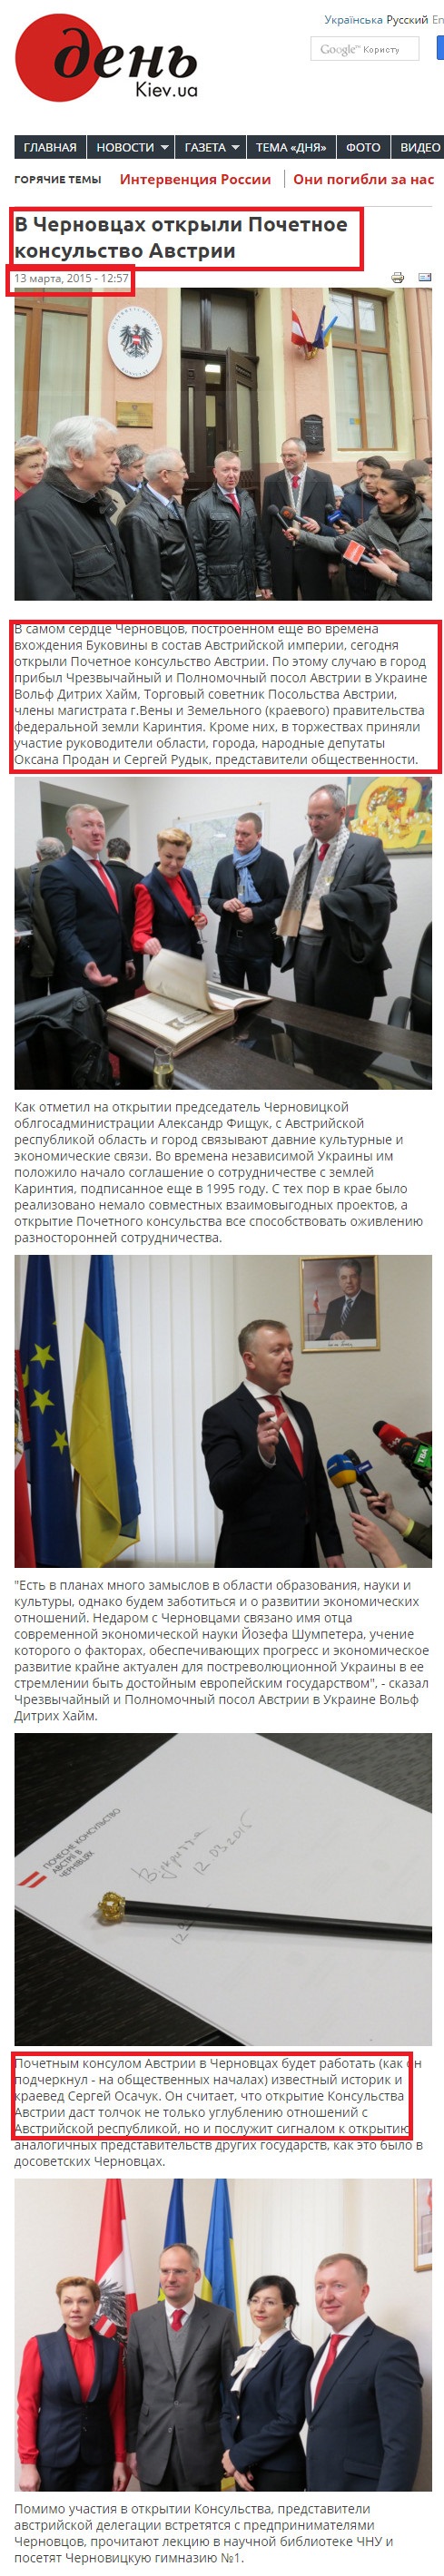 http://www.day.kiev.ua/ru/news/130315-v-chernovcah-otkryli-pochetnoe-konsulstvo-avstrii